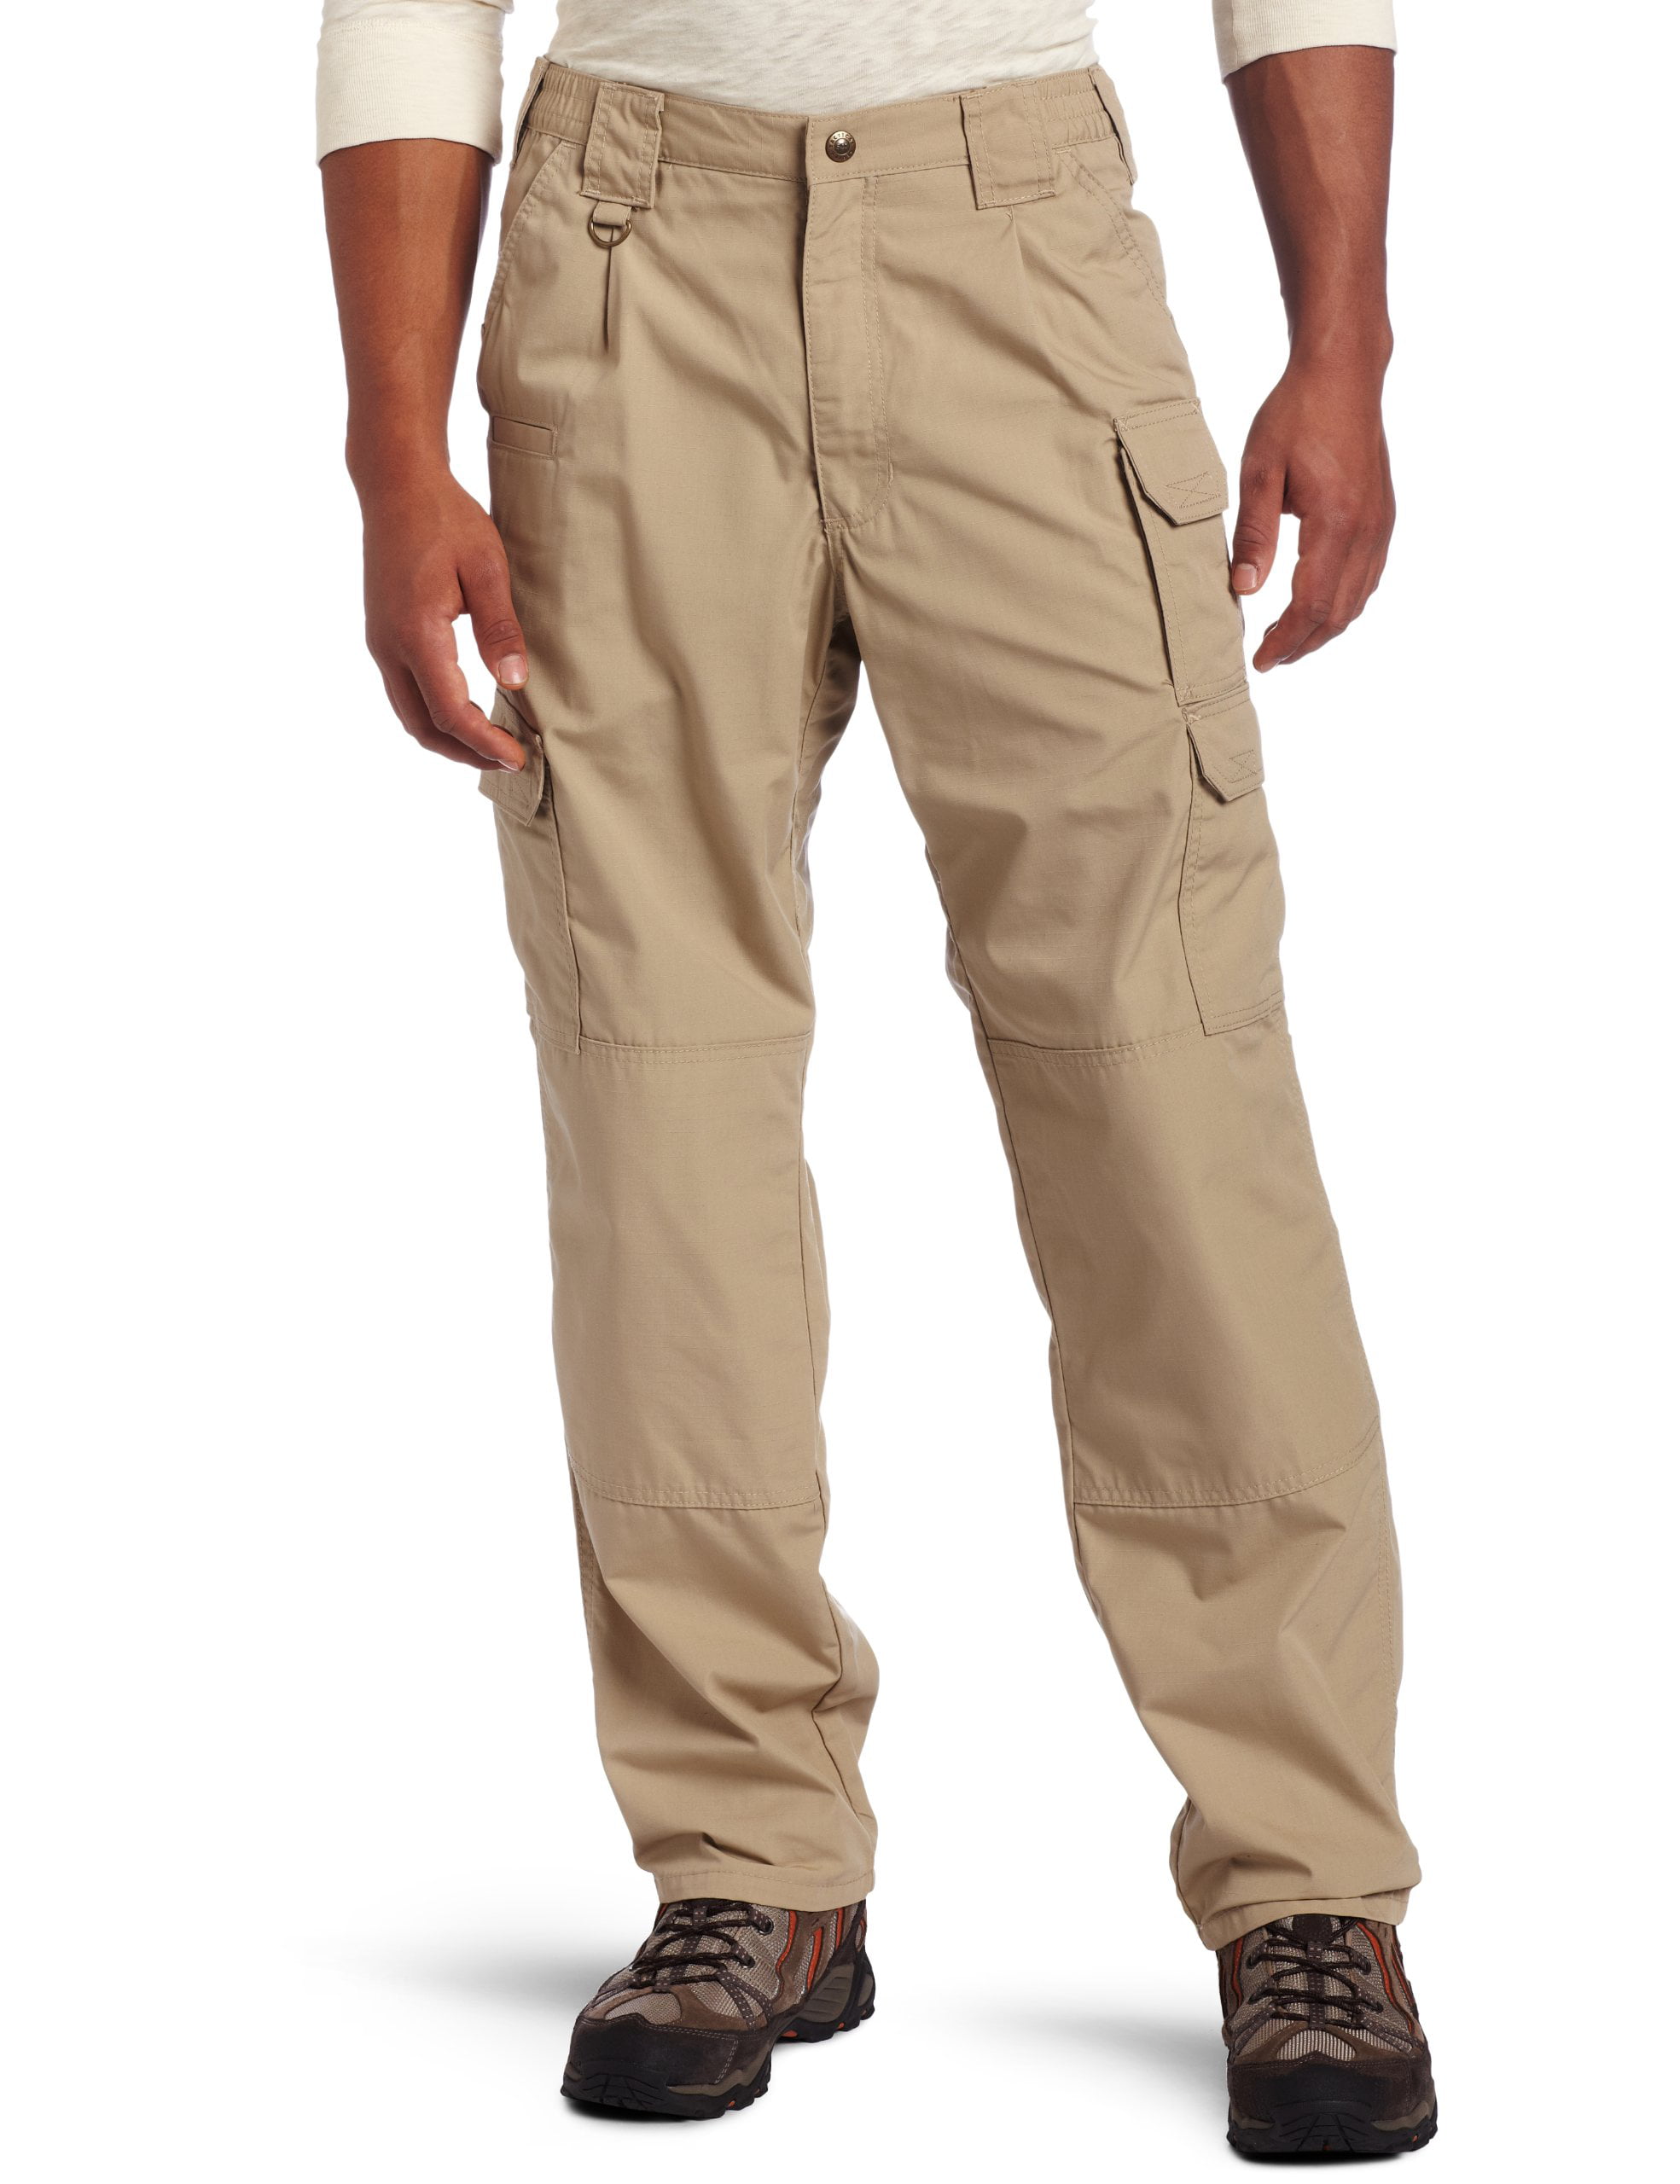 5.11 Tactical - Mens Pants 32x34 Taclite Workwear Cargos 32 - Walmart ...